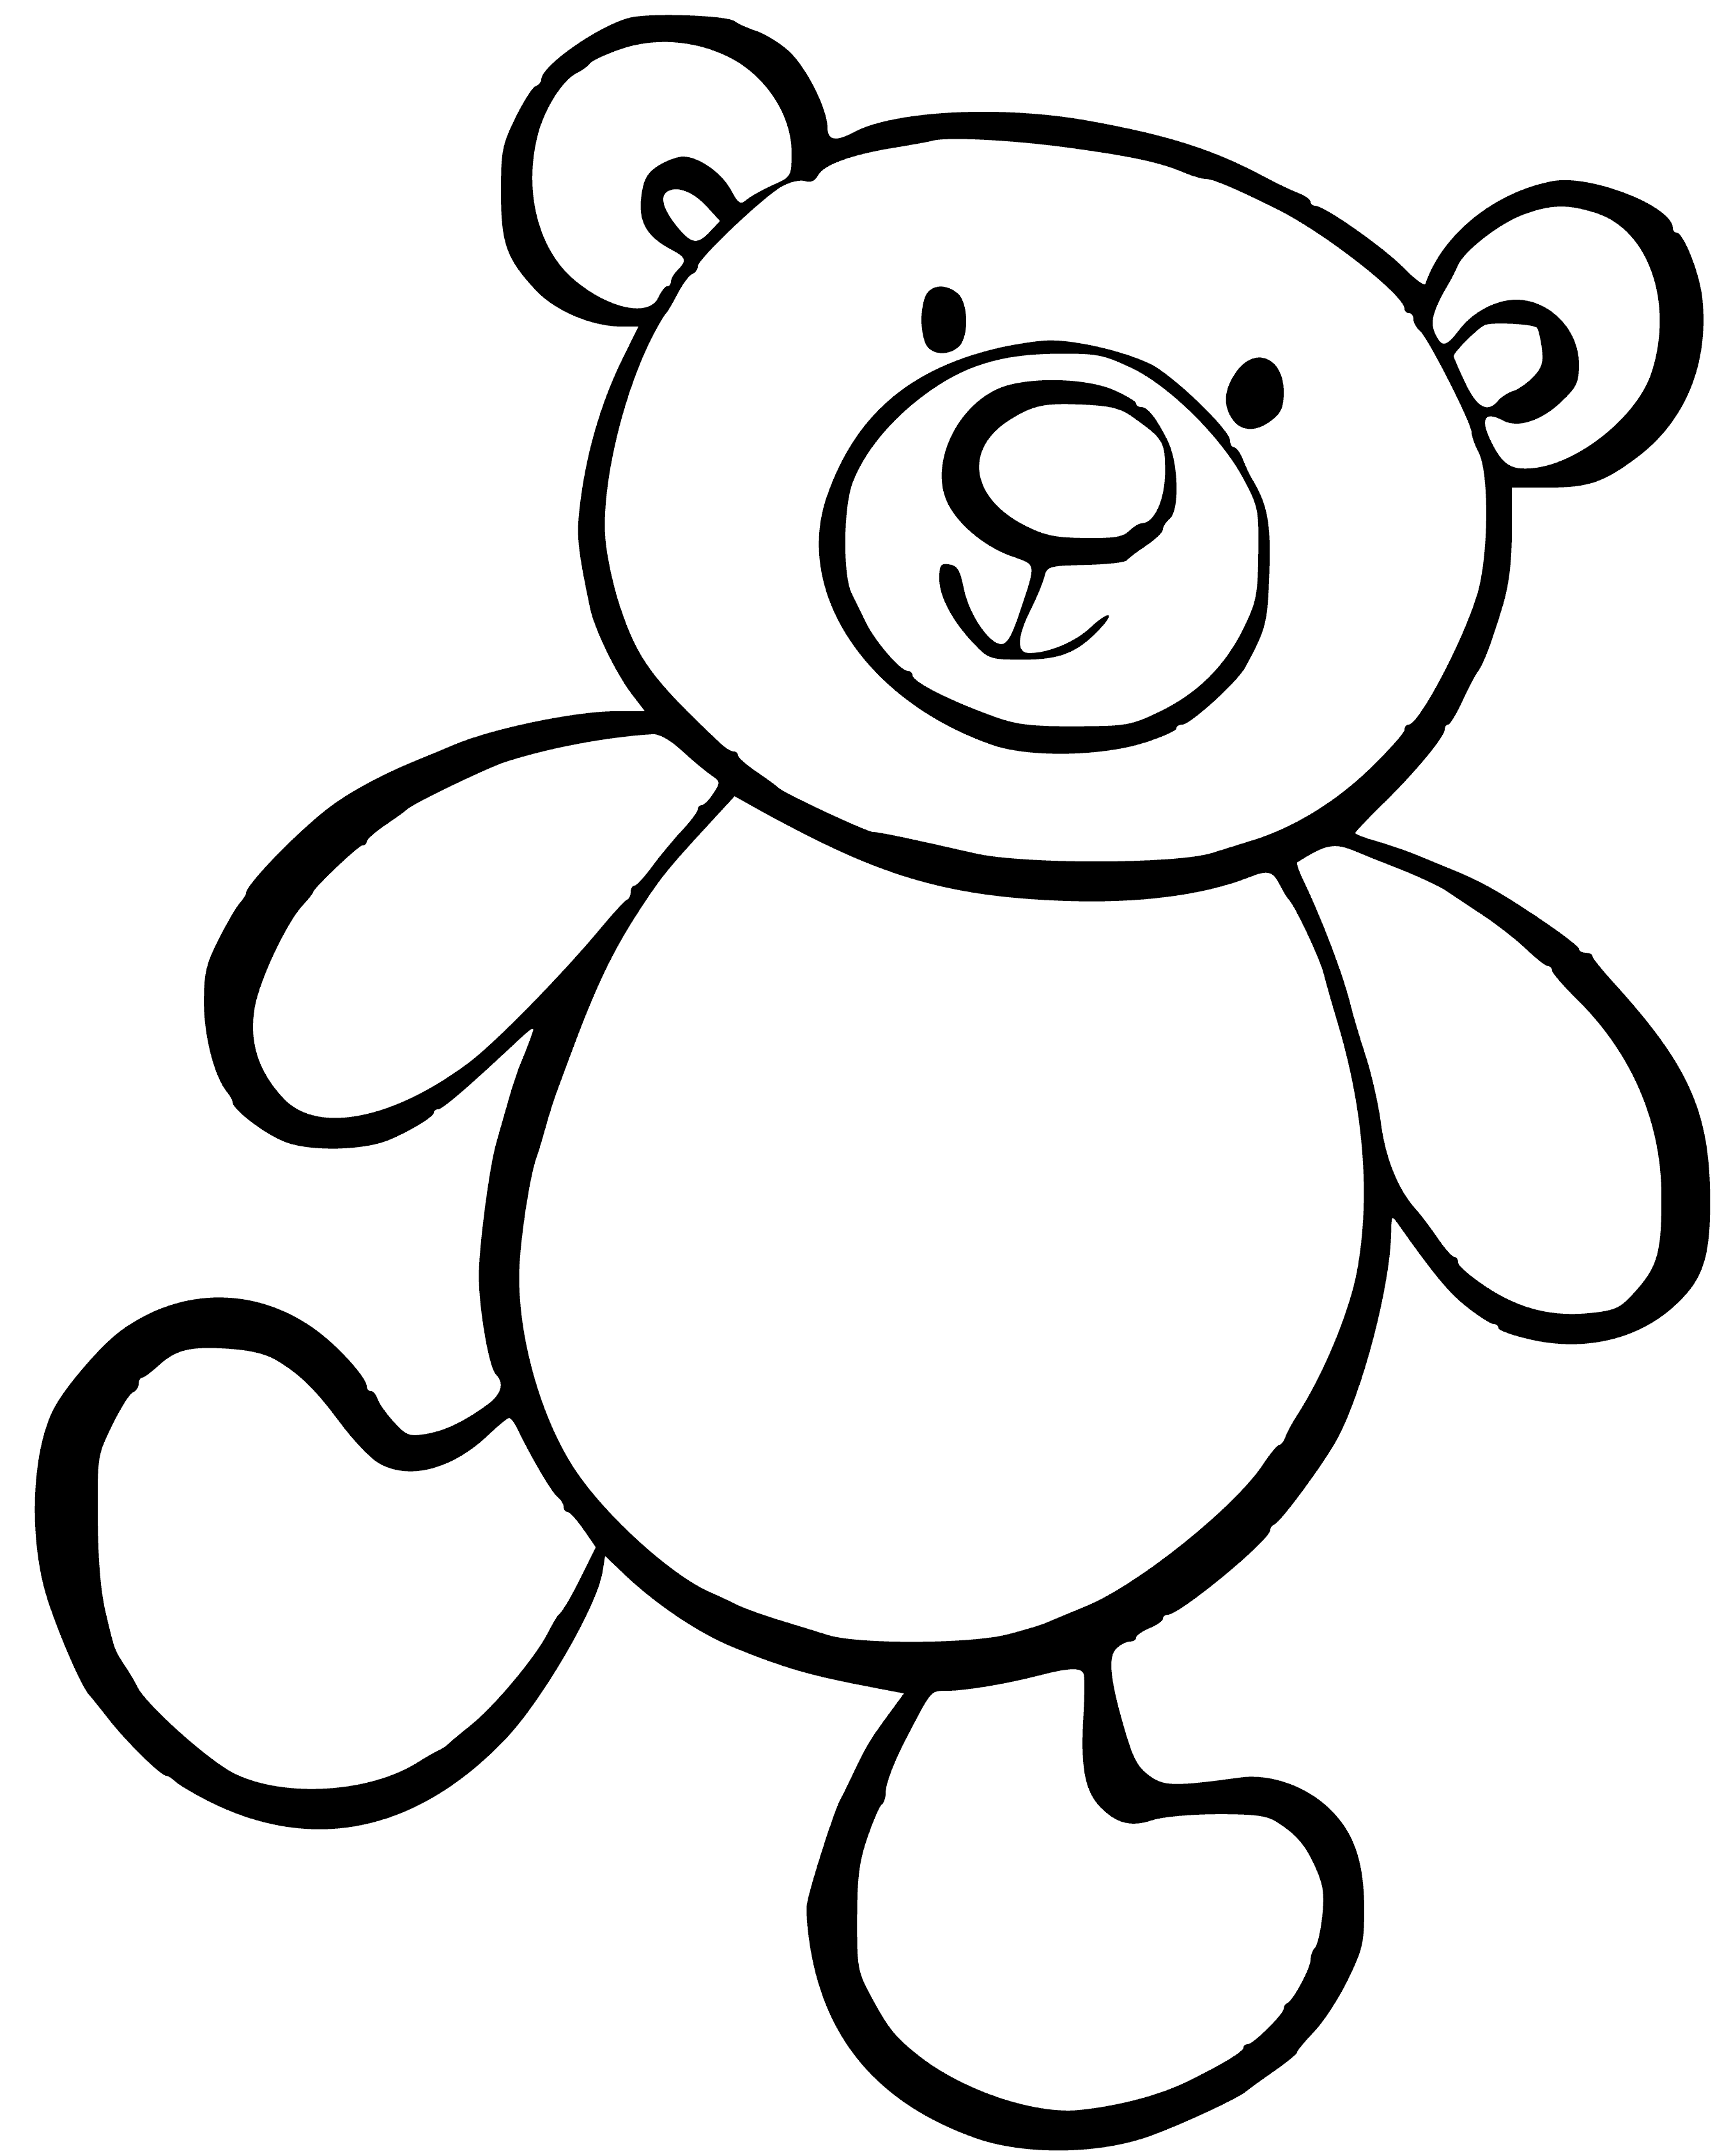 Картинка а4 распечатать. Медвежонок раскраска для детей. Раскраска "мишки". Мишка раскраска для малышей. Медведь раскраска для малышей.